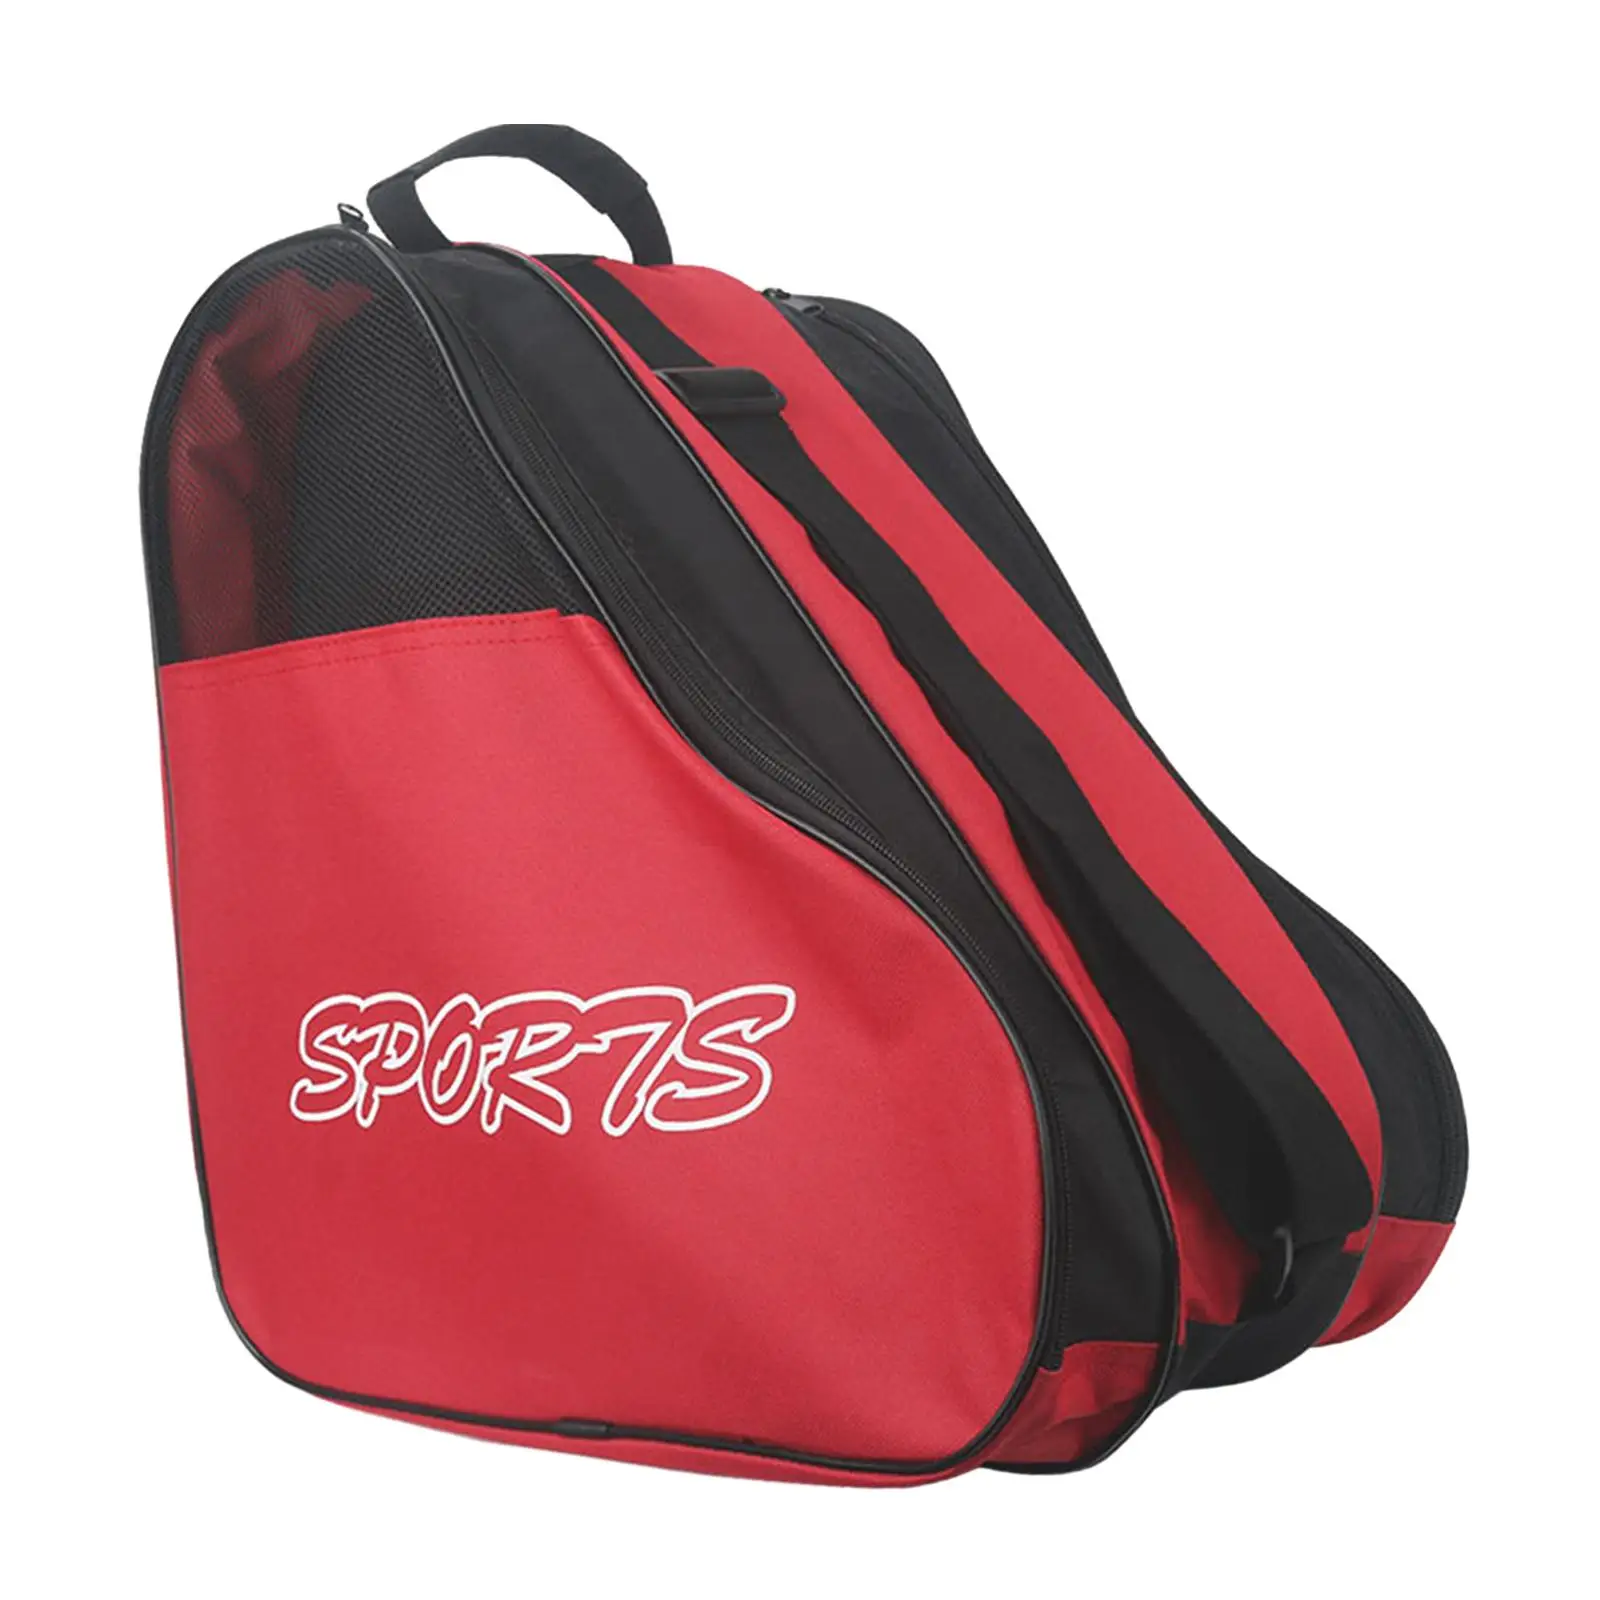 Skating Shoes Bag Skates Storage Bag Large Capacity Breathable Handbags Roller Skates Bag for Sports Outdoor Kids Boys Children